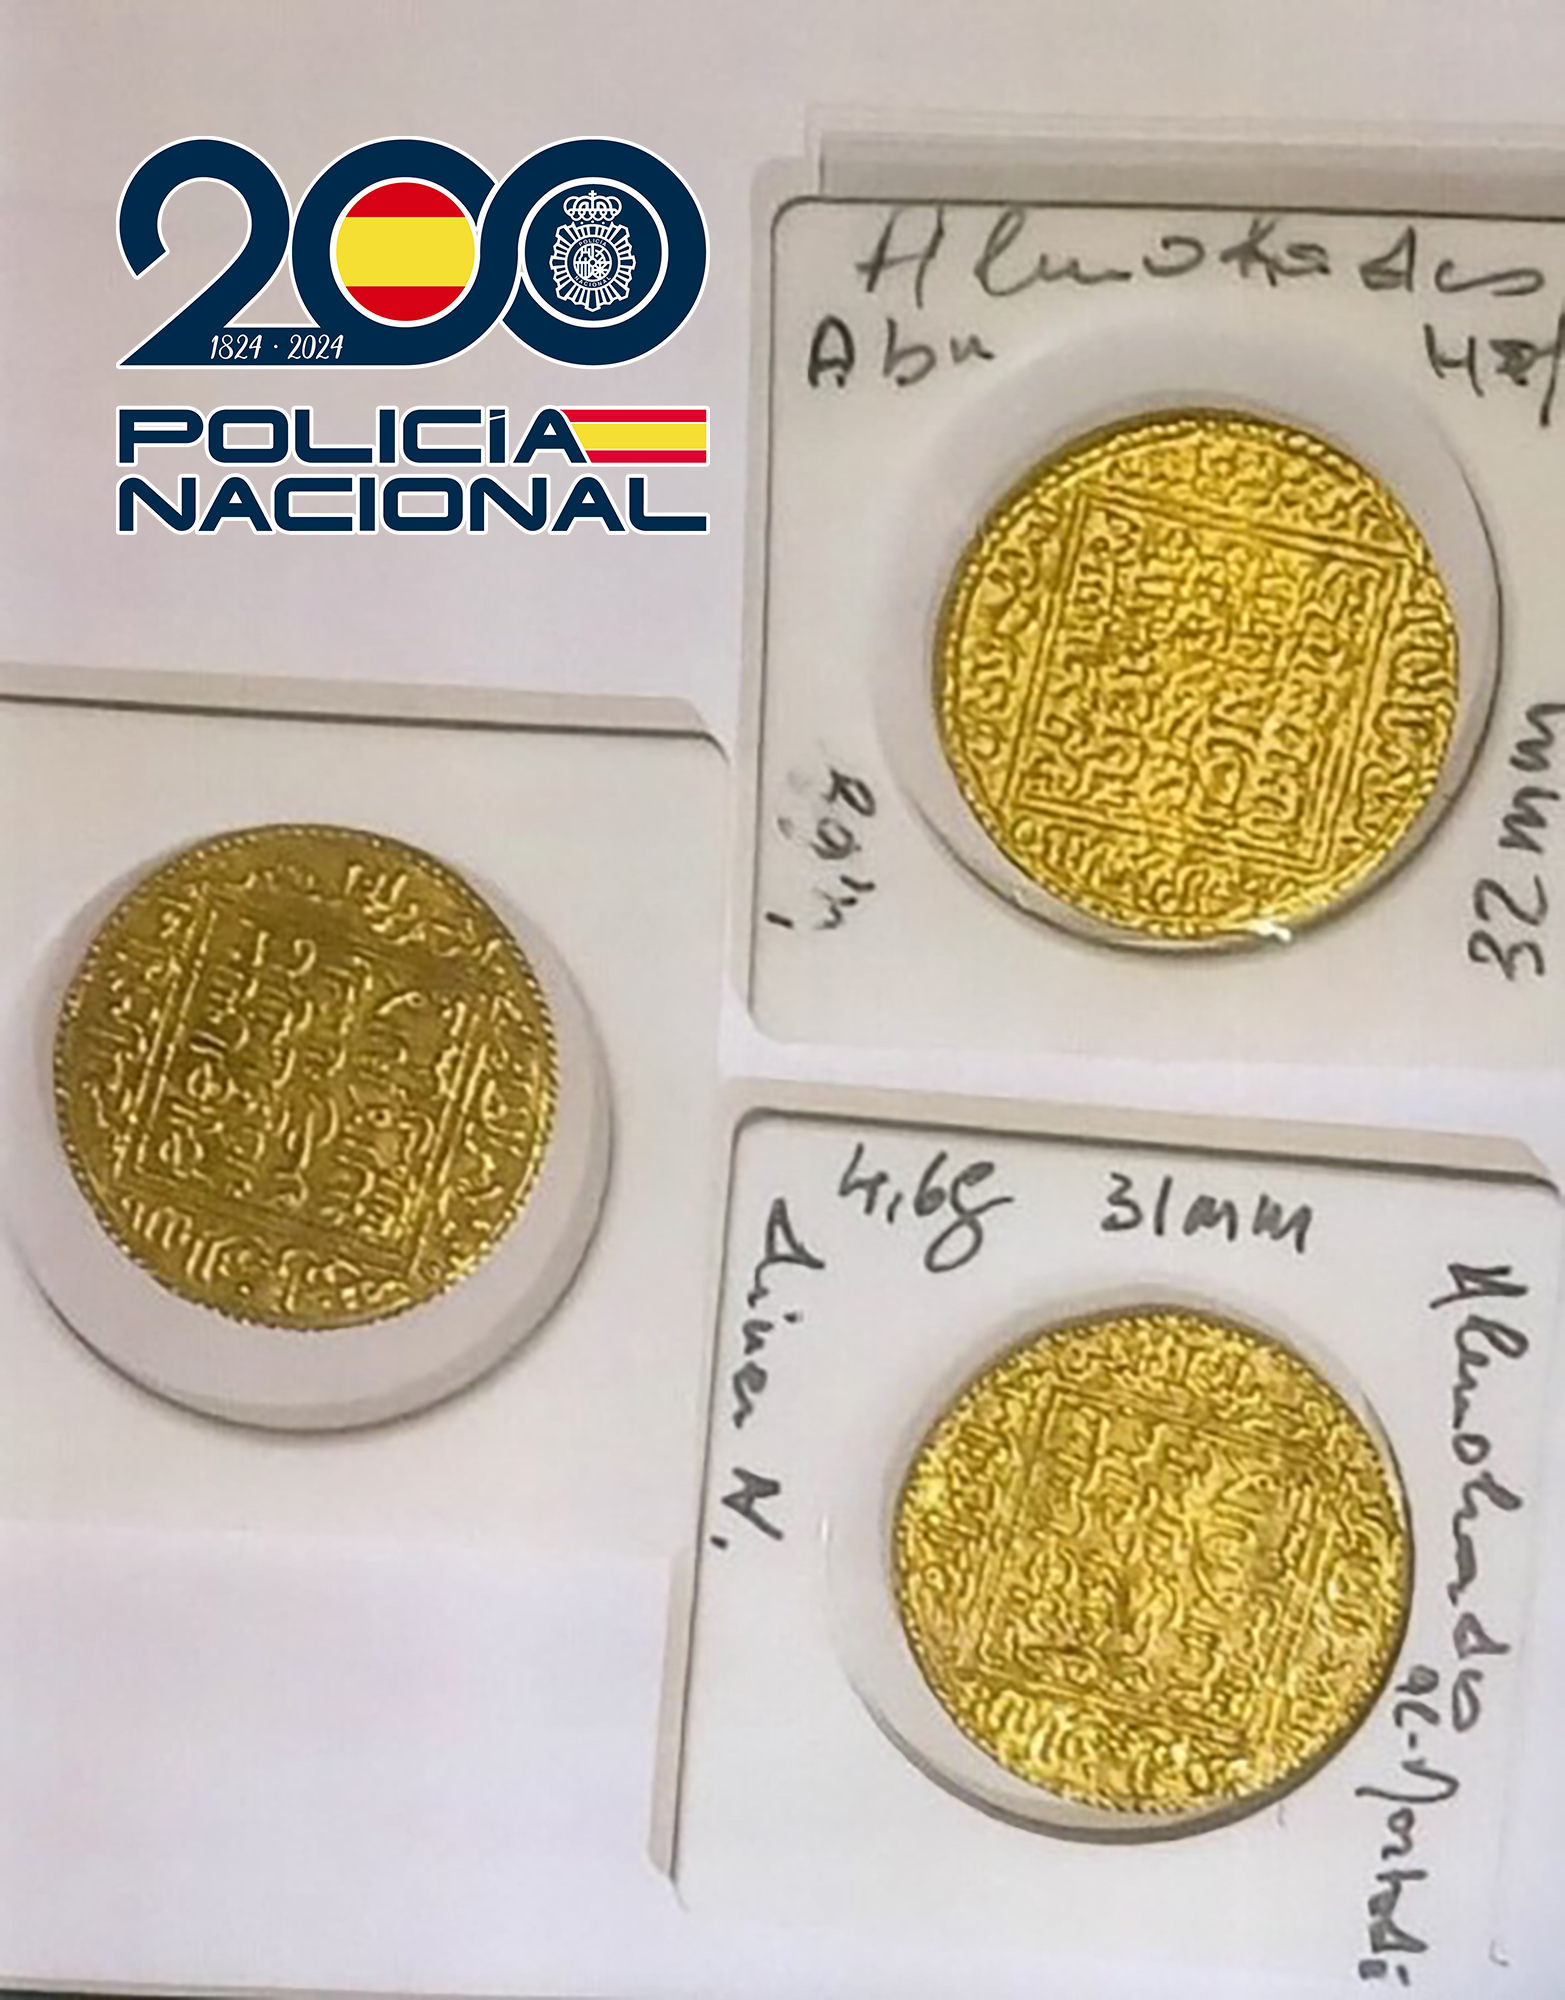 La Policía Nacional detiene a dos personas que introducían en España monedas históricas procedentes de Marruecos mediante documentación falsa